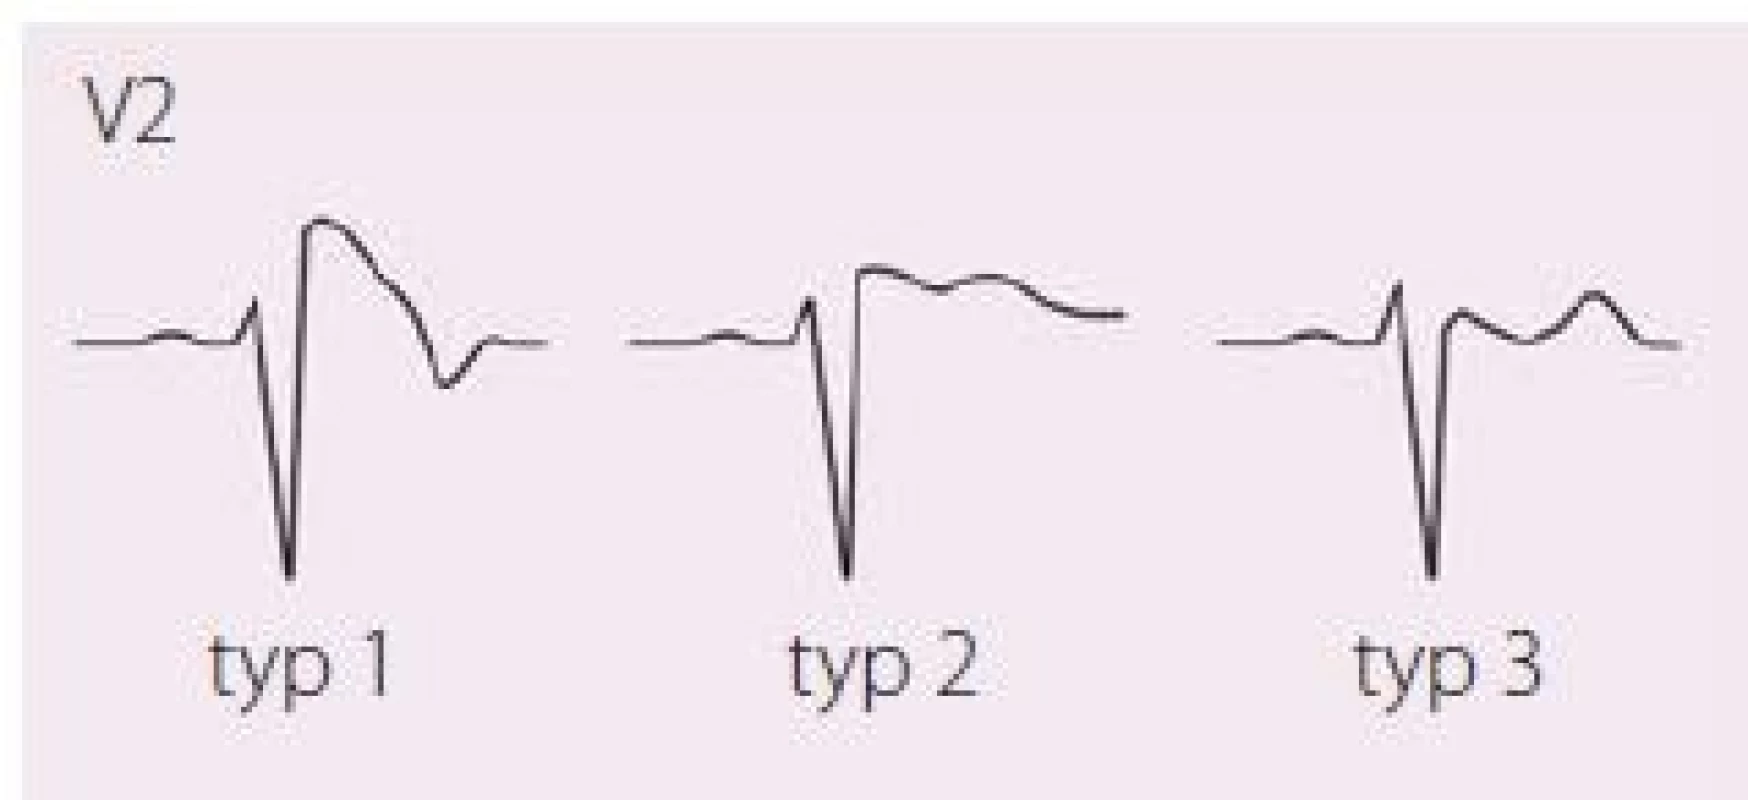 EKG projevy Brugada syndromu, jediný „diagnostický“ je typ 1, tj. ST elevace ≥ 2 mm následovaná negativní vlnou bez izoelektrické nebo s minimální izoelektrickou linií, zvaný také „Coved type“; další dva typy nazýváme „Saddle back“ – typ 2 má mít výše J bod než T vlnu, typ 3 naopak. Upraveno dle [21,22].